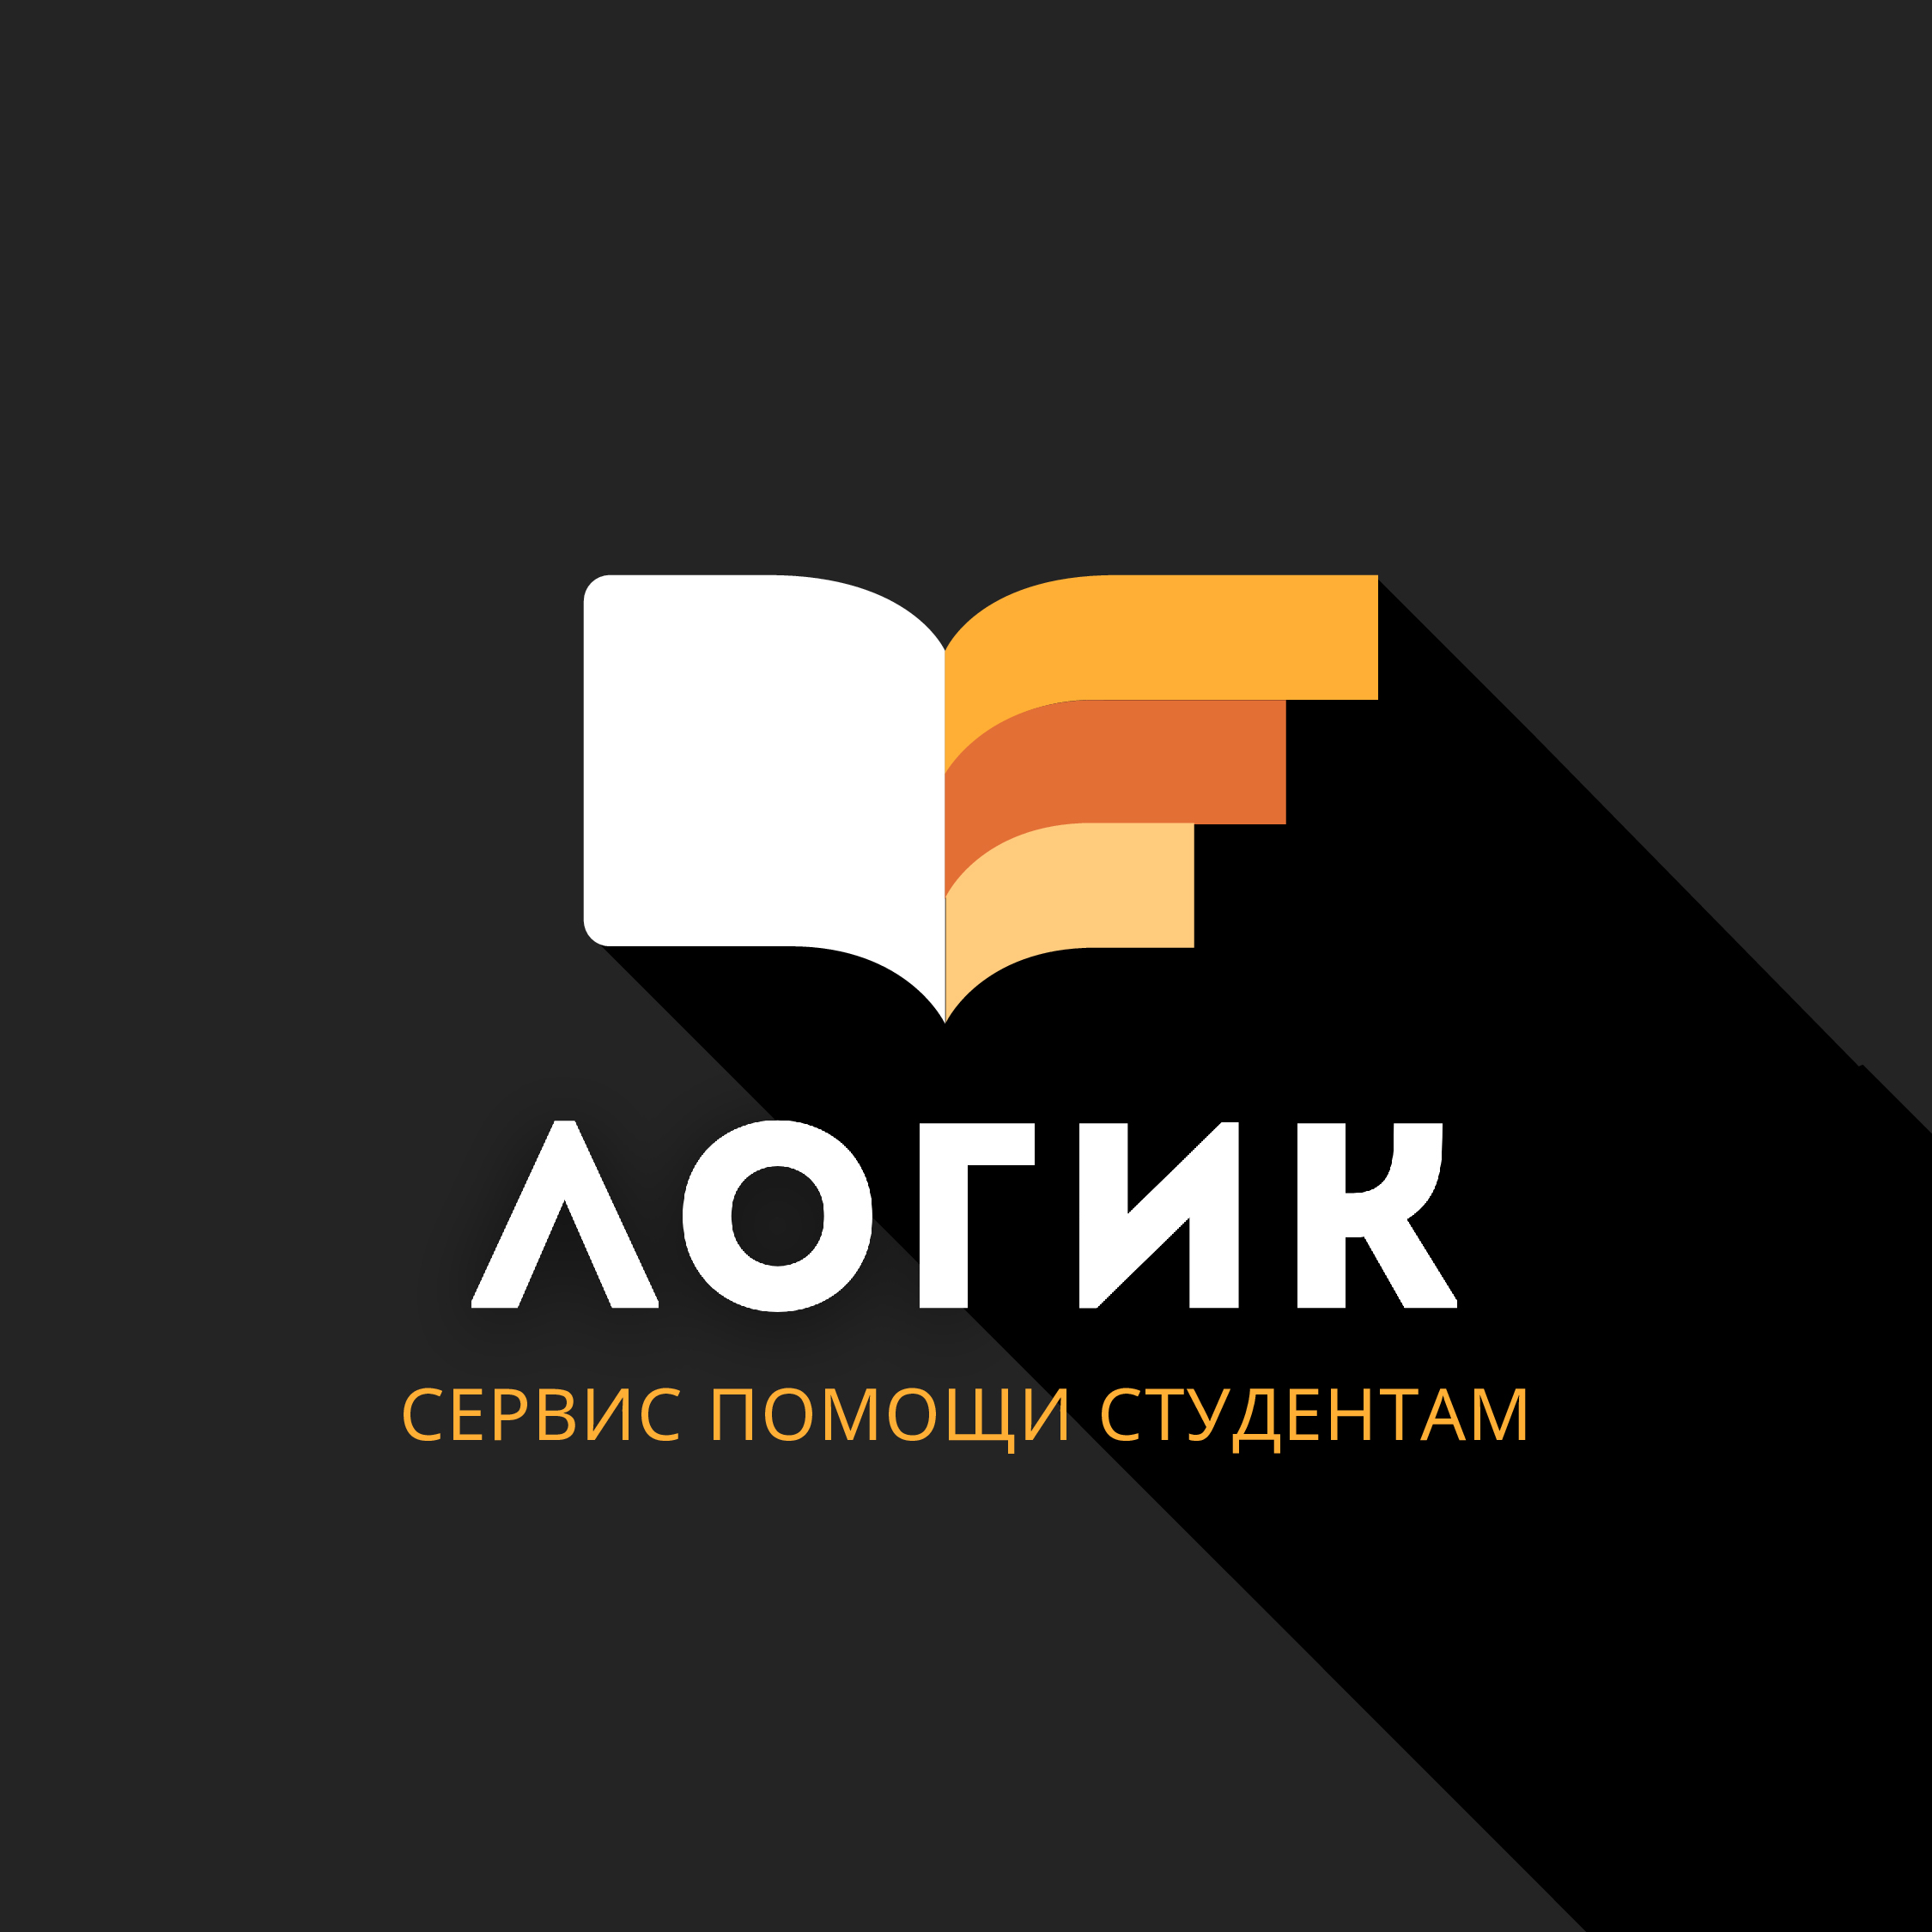 Логик — сервис помощи студентам и аспирантам в Томске